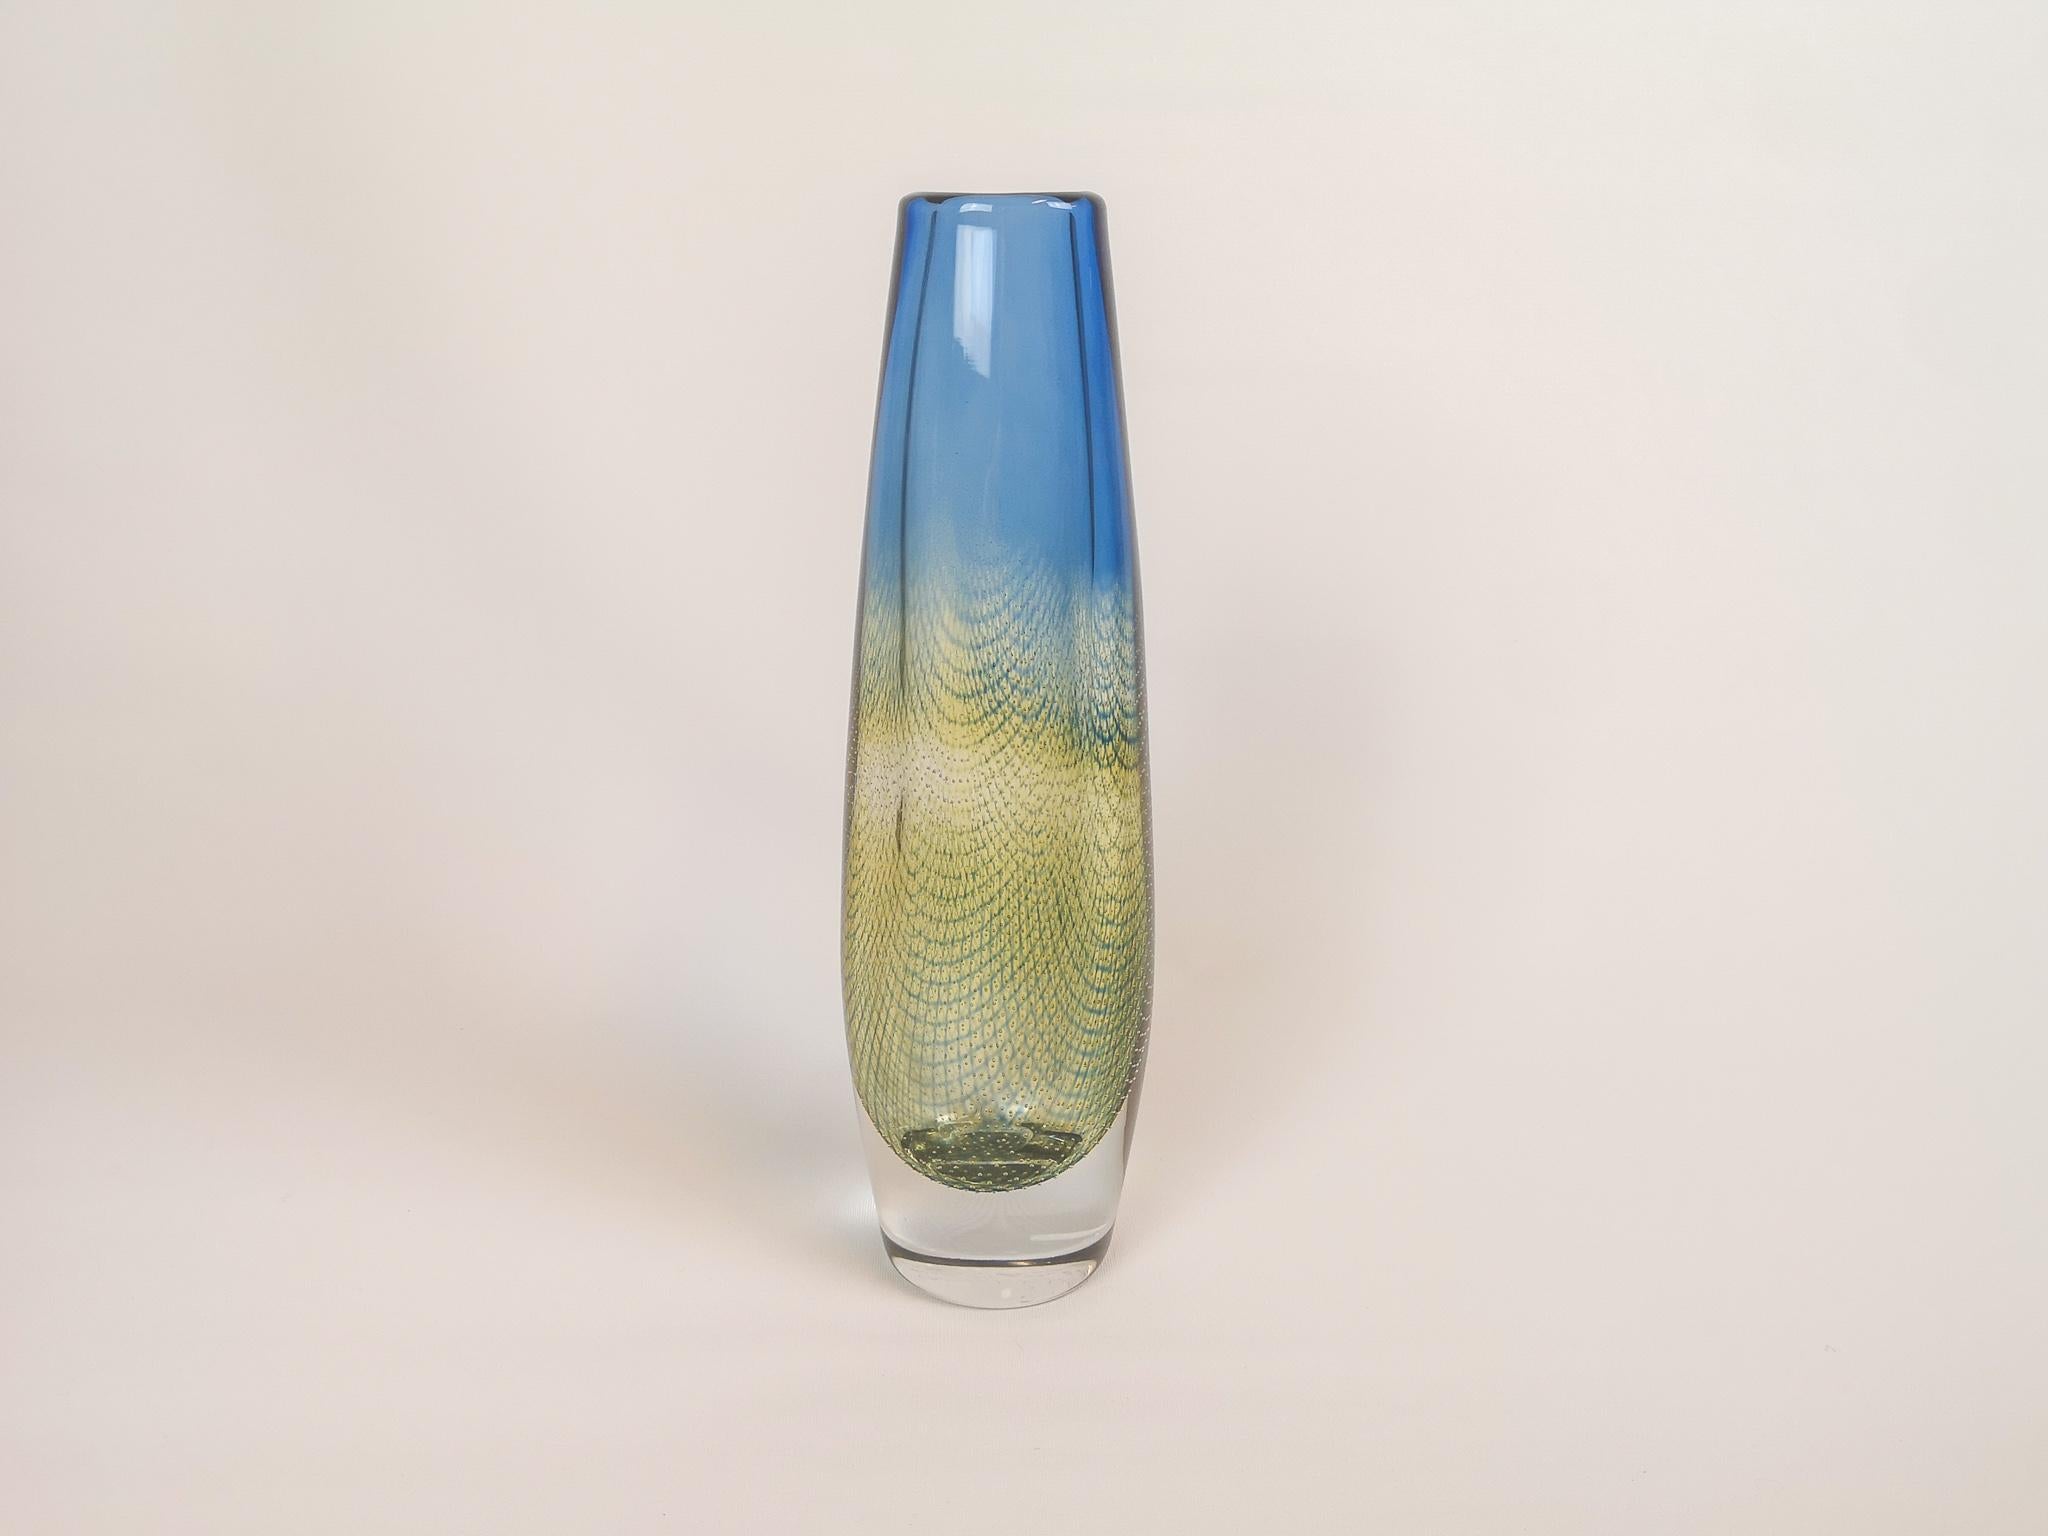 Orrefors blau-gelb-grüne Vase, entworfen von Sven Palmqvist. 
Wunderschönes Glas mit außergewöhnlicher blauer und gelb/grüner Farbe, die mit dem klaren Glas kollaboriert. 

 Guter Zustand 

Maße: H 28,5 cm B 10 cm T 7,5 cm. Signiert Orrefors S.